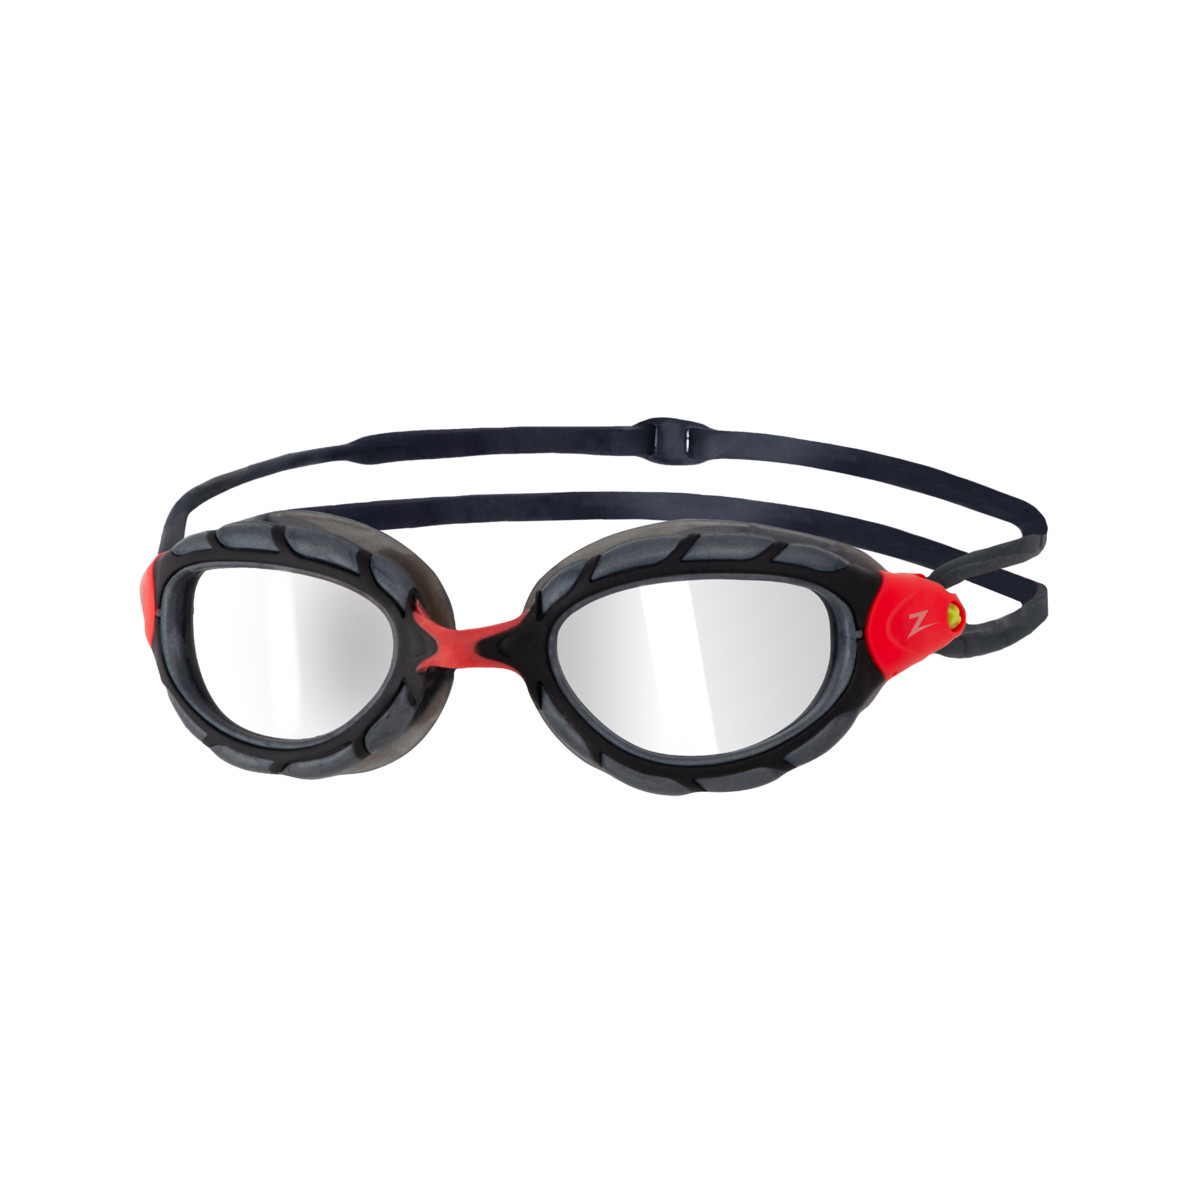 Zoggs Unisex's Predator Swimming Goggles